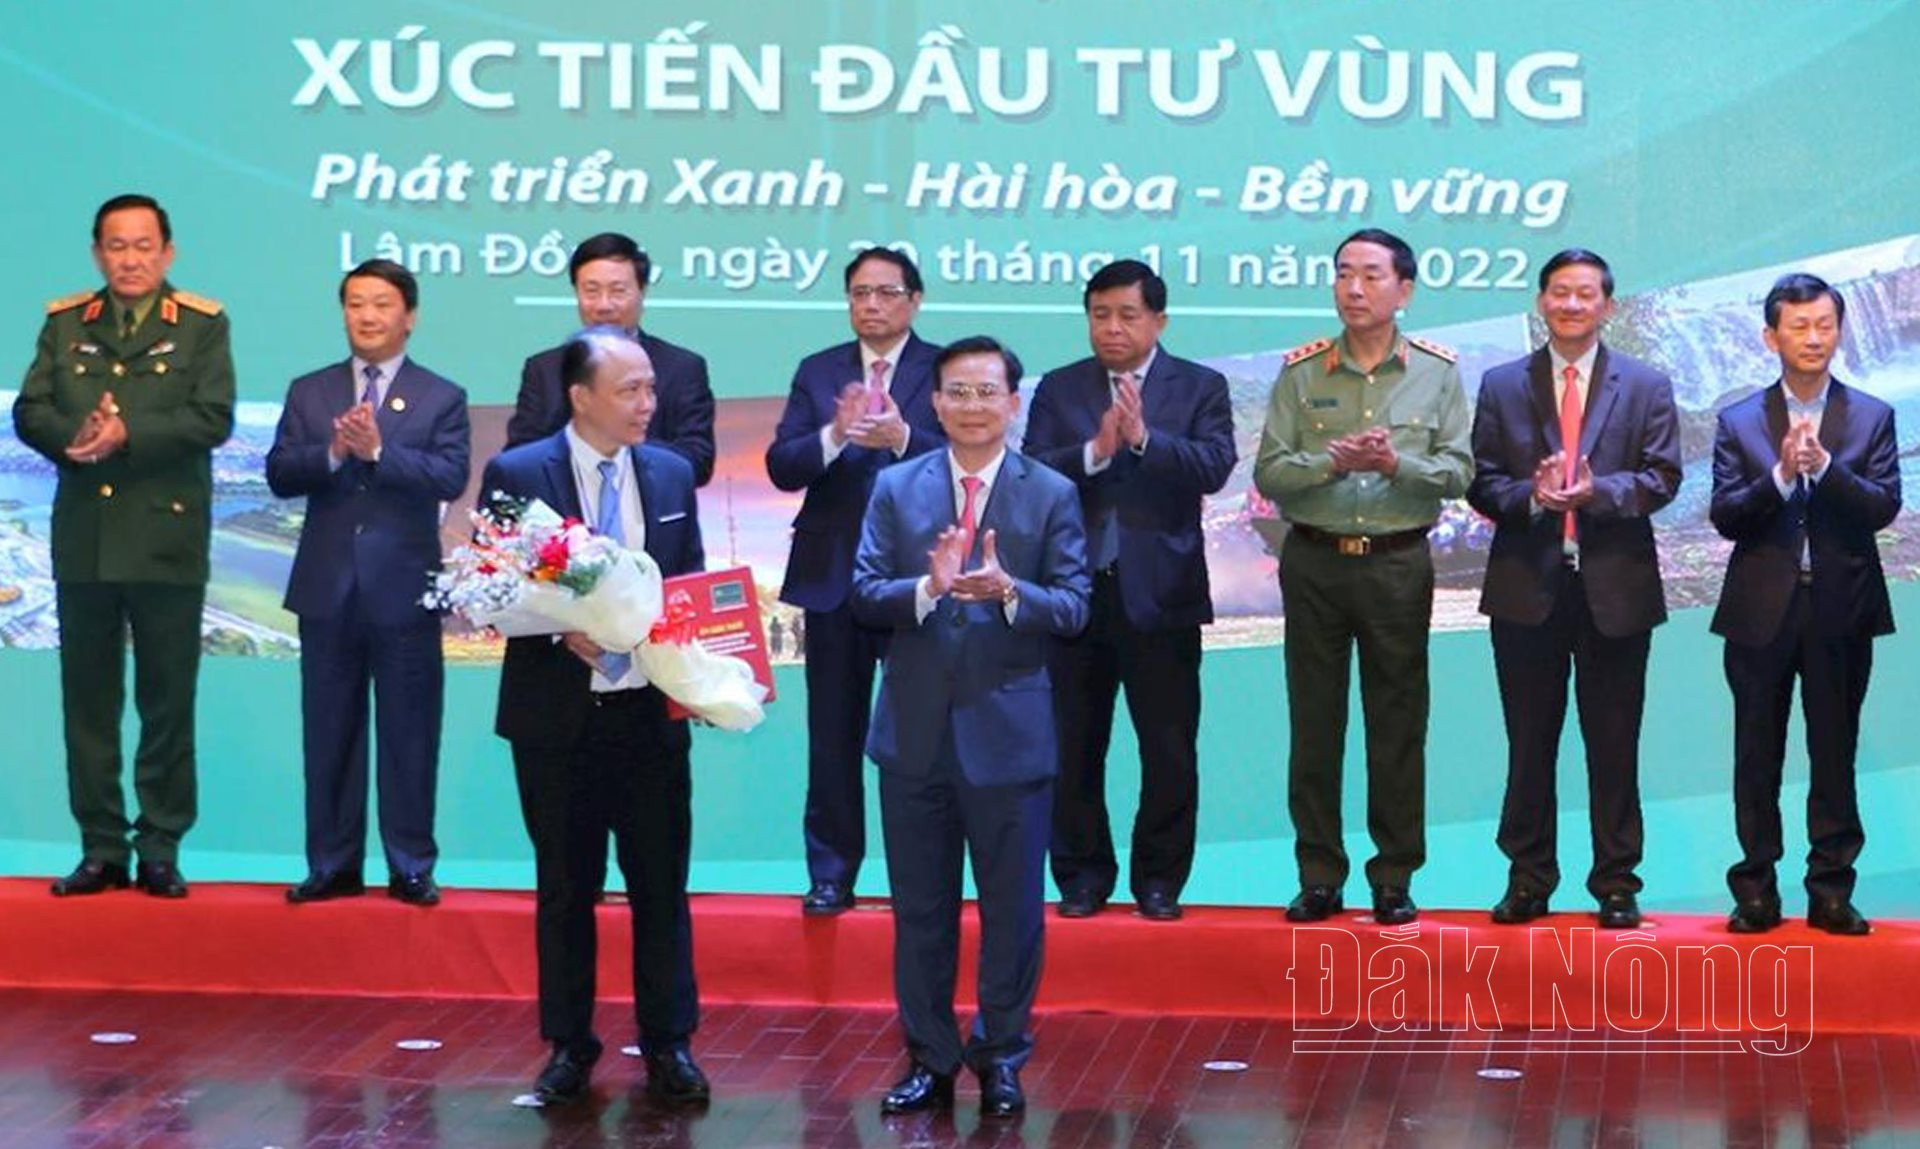 Chủ tịch UBND tỉnh Đắk Nông Hồ Văn Mười trao biên bản ghi nhớ hợp tác cho các doanh nghiệp vào năm 2022.